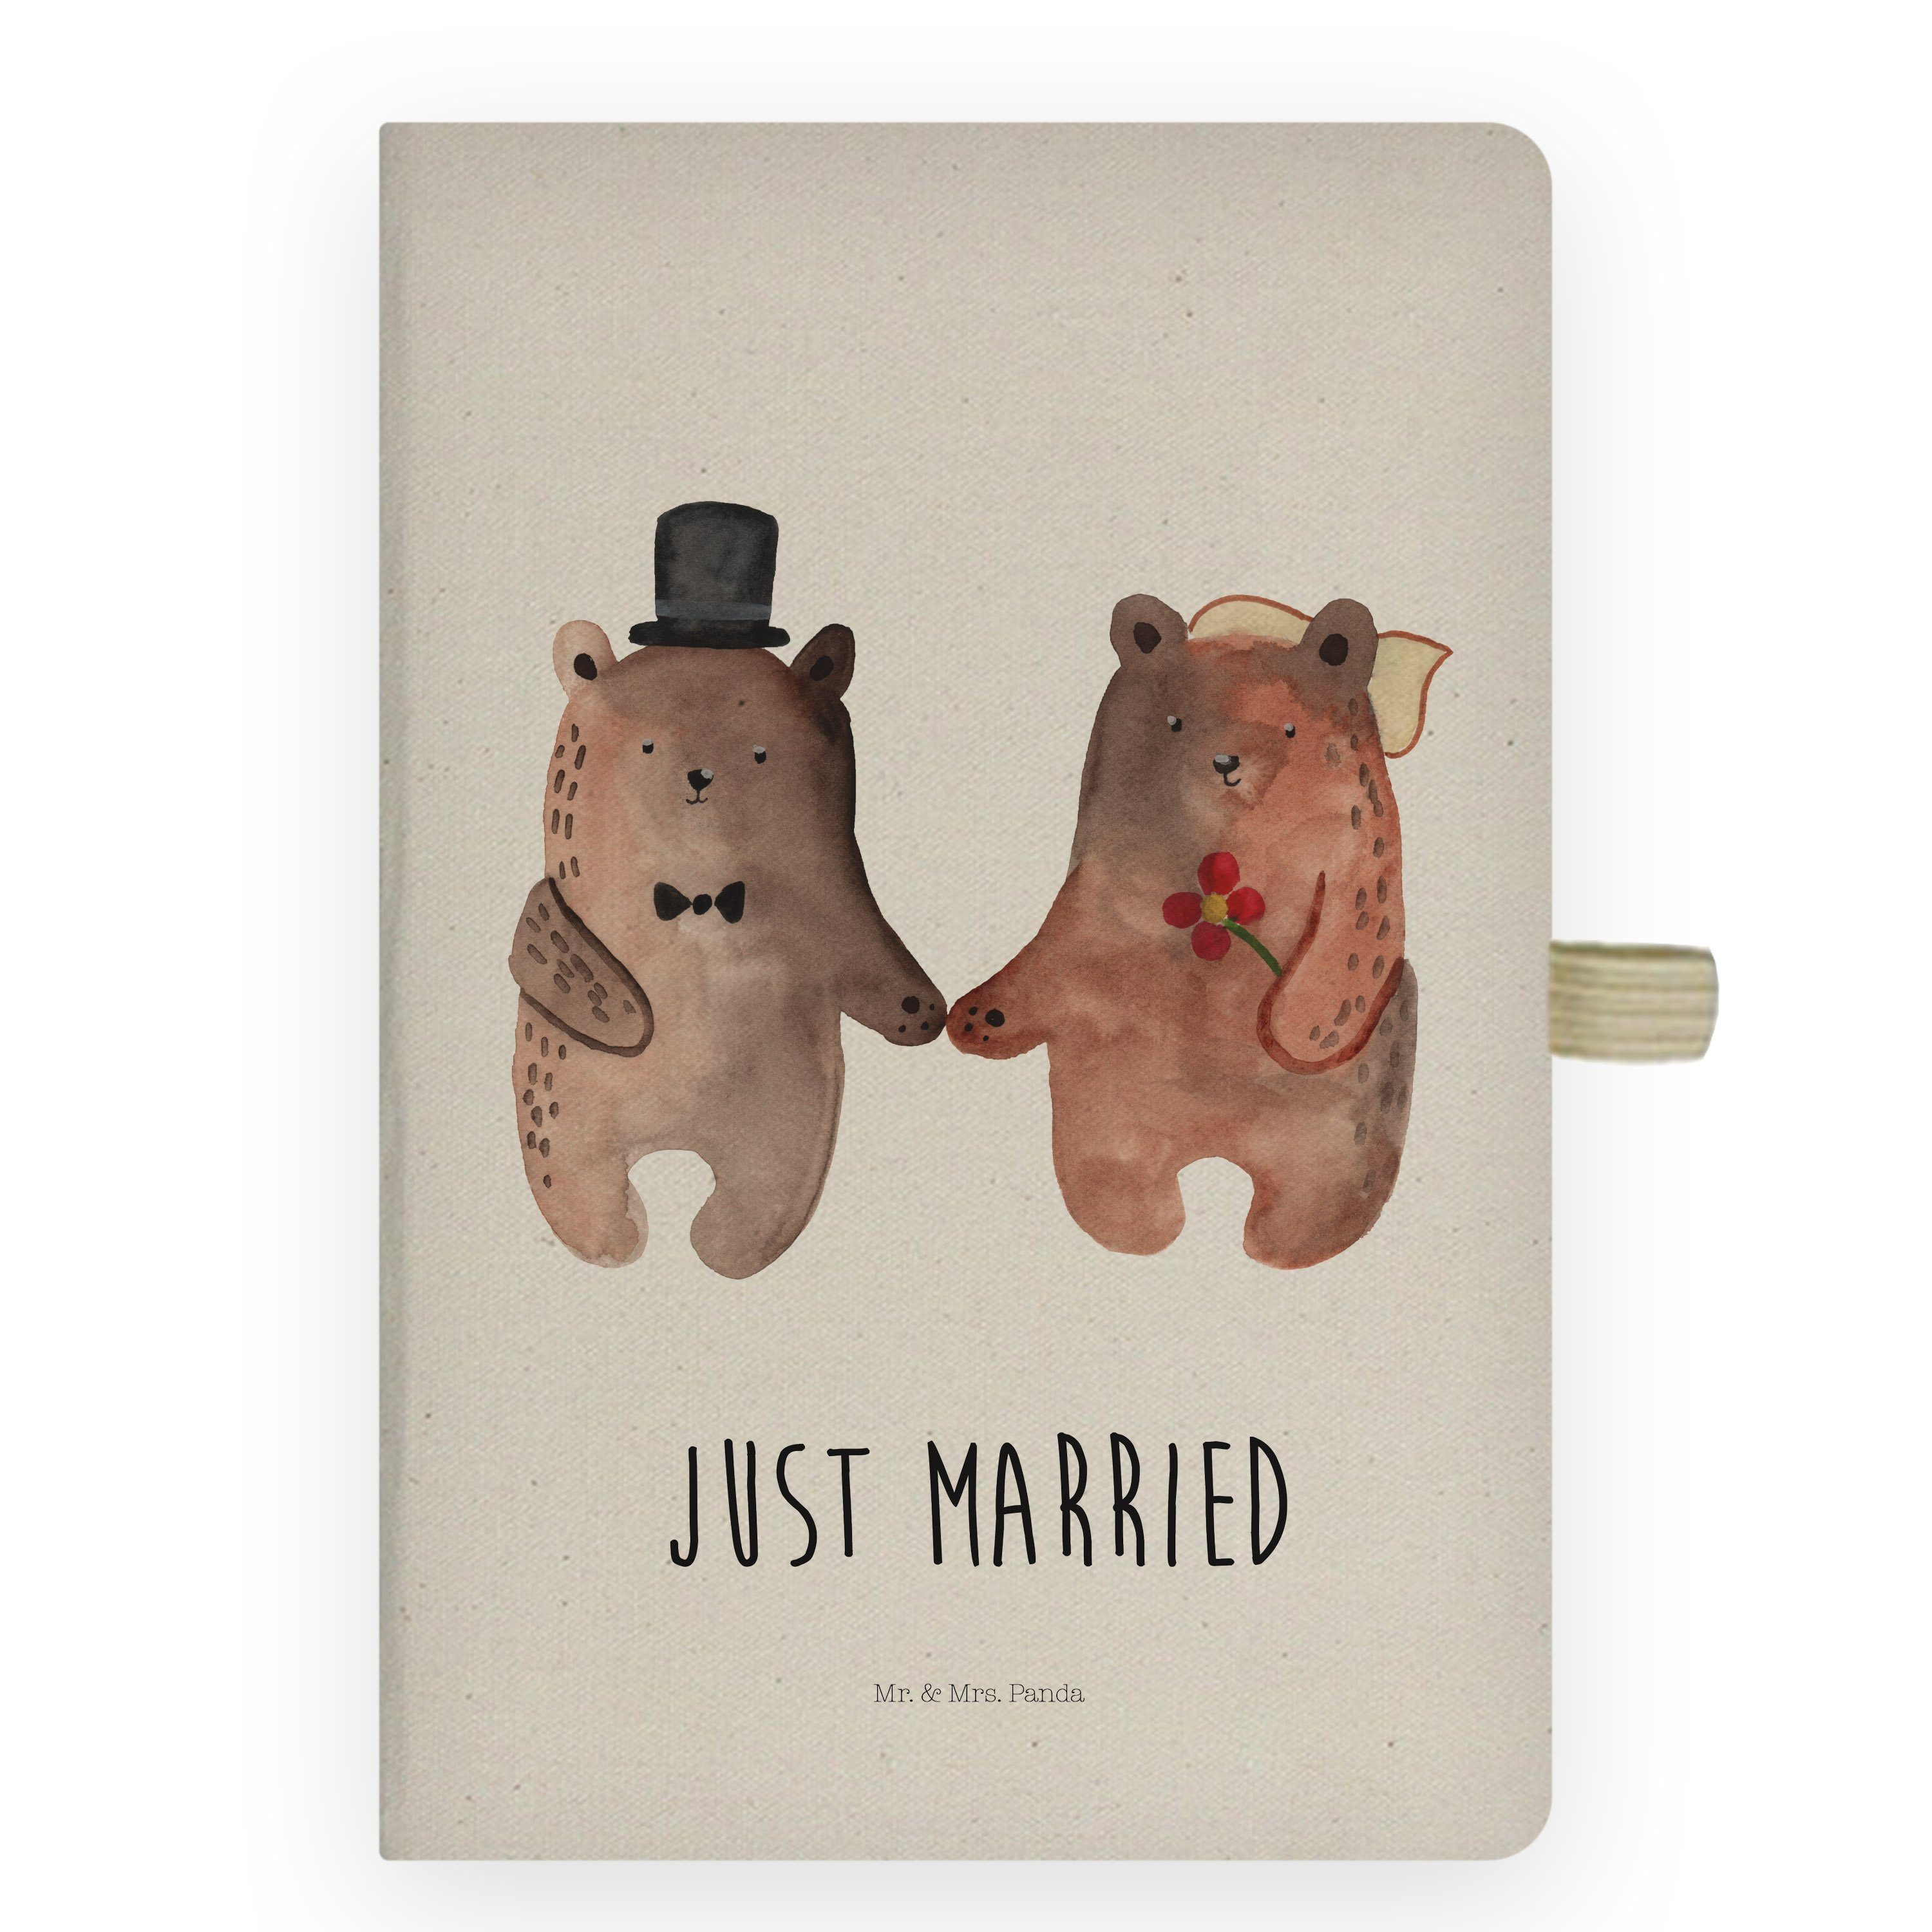 Mr. & Mrs. Panda Notizbuch Bär Heirat - Transparent - Geschenk, Notizen, Journal, Eintragebuch